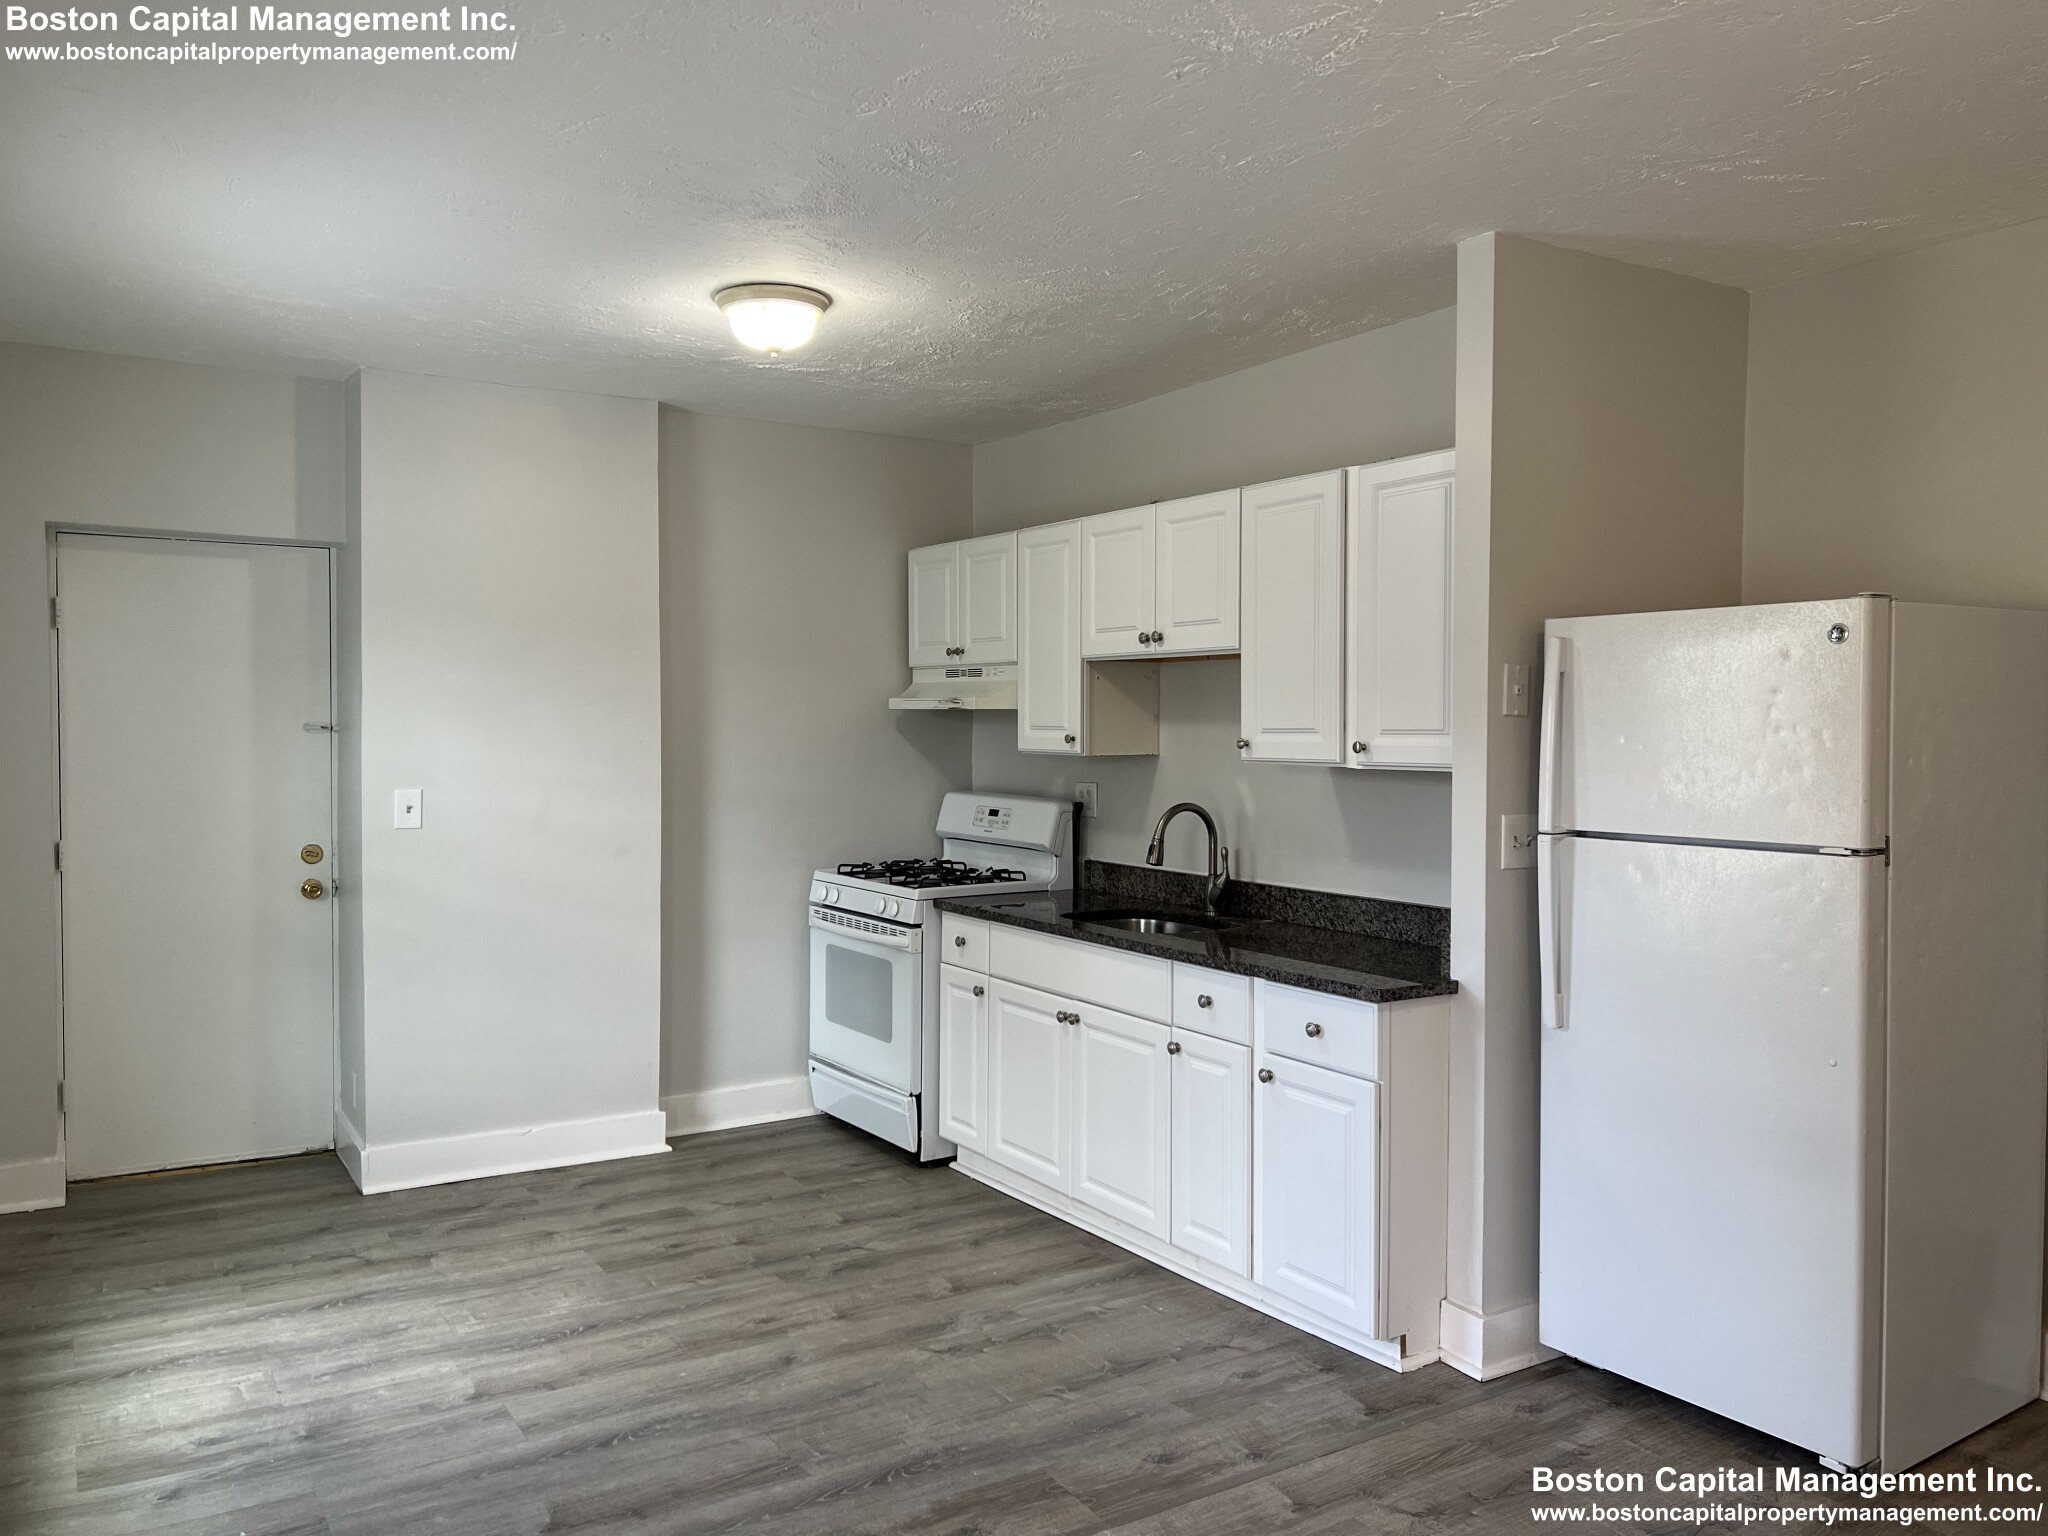 Photos of apartment on Clinton St.,Everett MA 02149